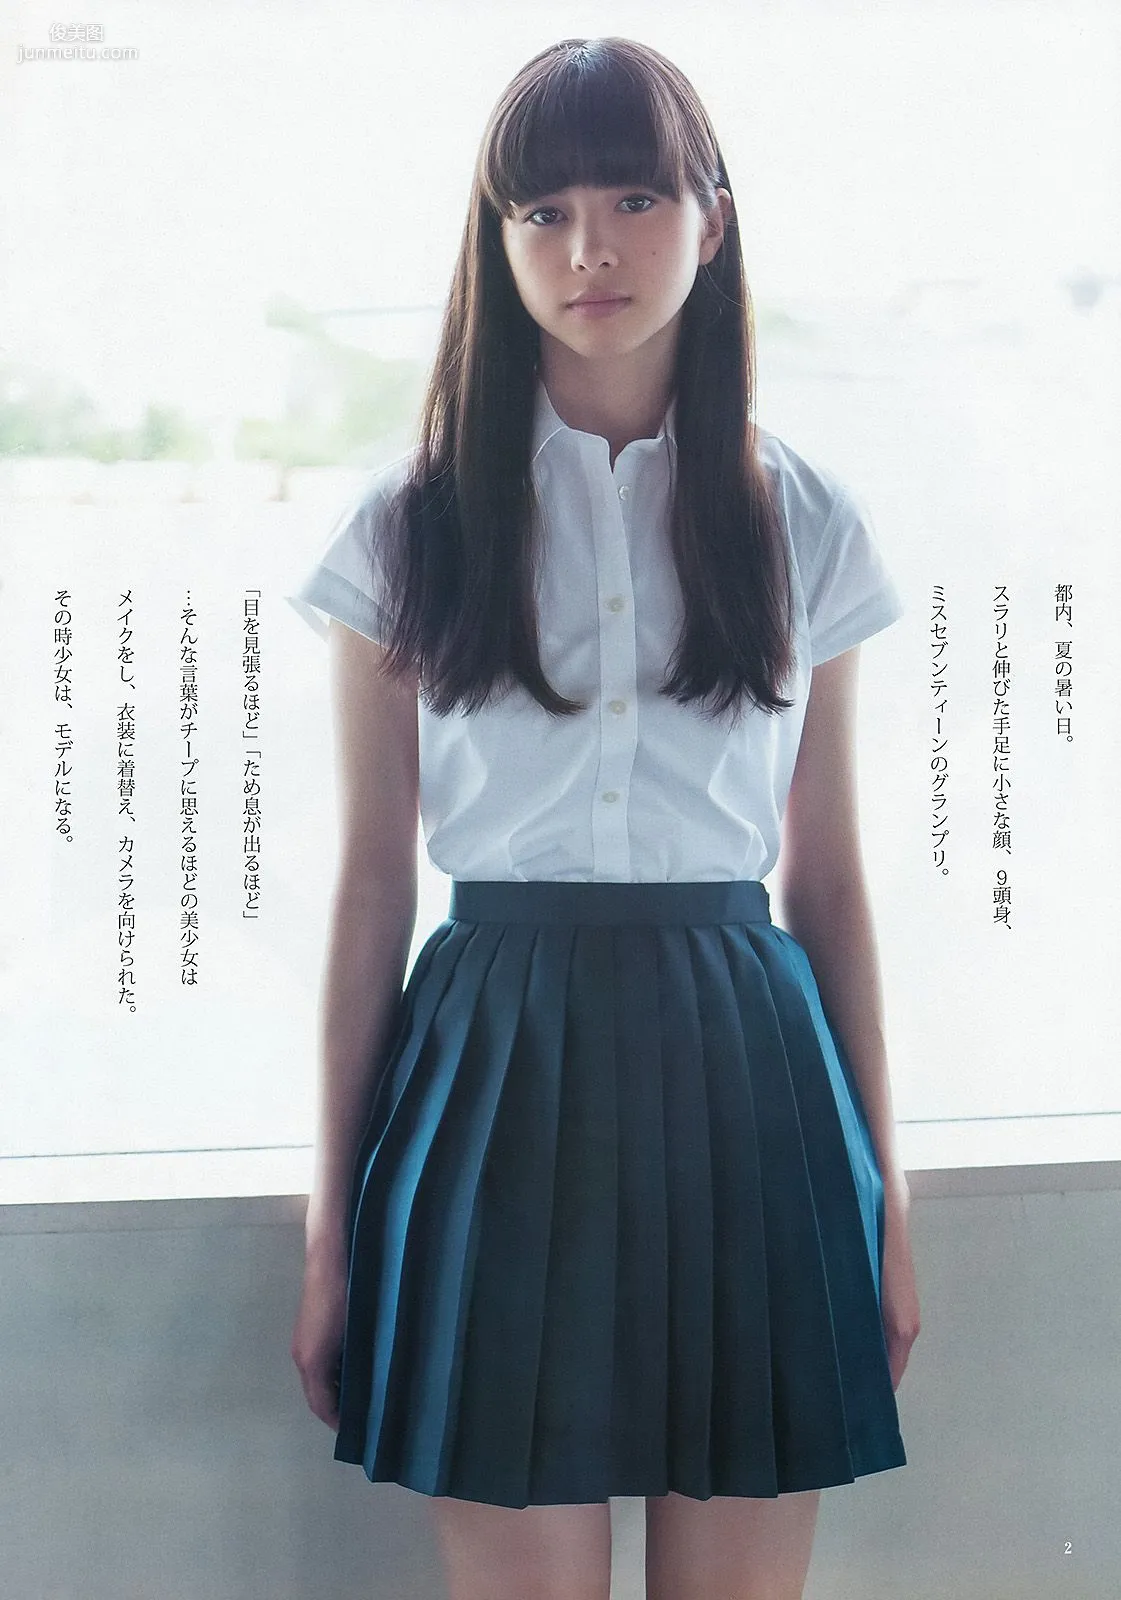 篠田麻里子 アオハルガールズ 中条あやみ [Weekly Young Jump] 2013年No.36-37 写真杂志16